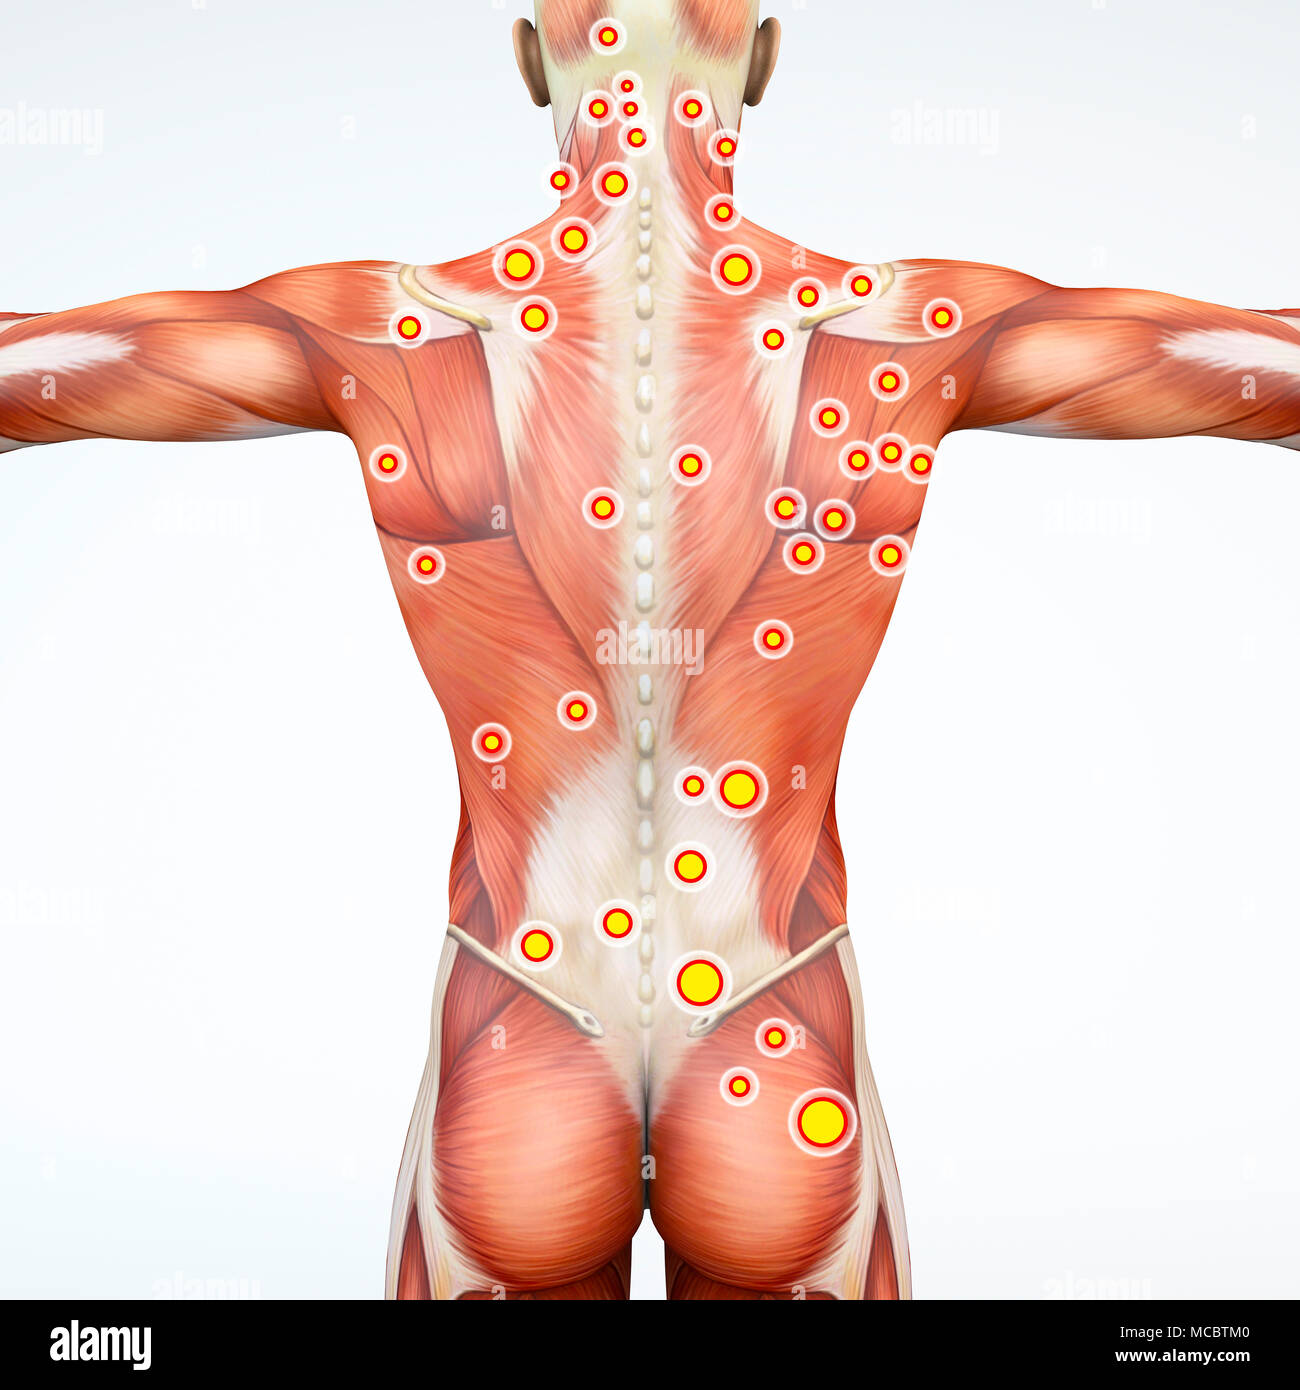 Vue arrière d'un homme et de ses points de déclenchement. Anatomie des muscles. Le rendu 3d. Points myofascial trigger points hyperirritable Banque D'Images